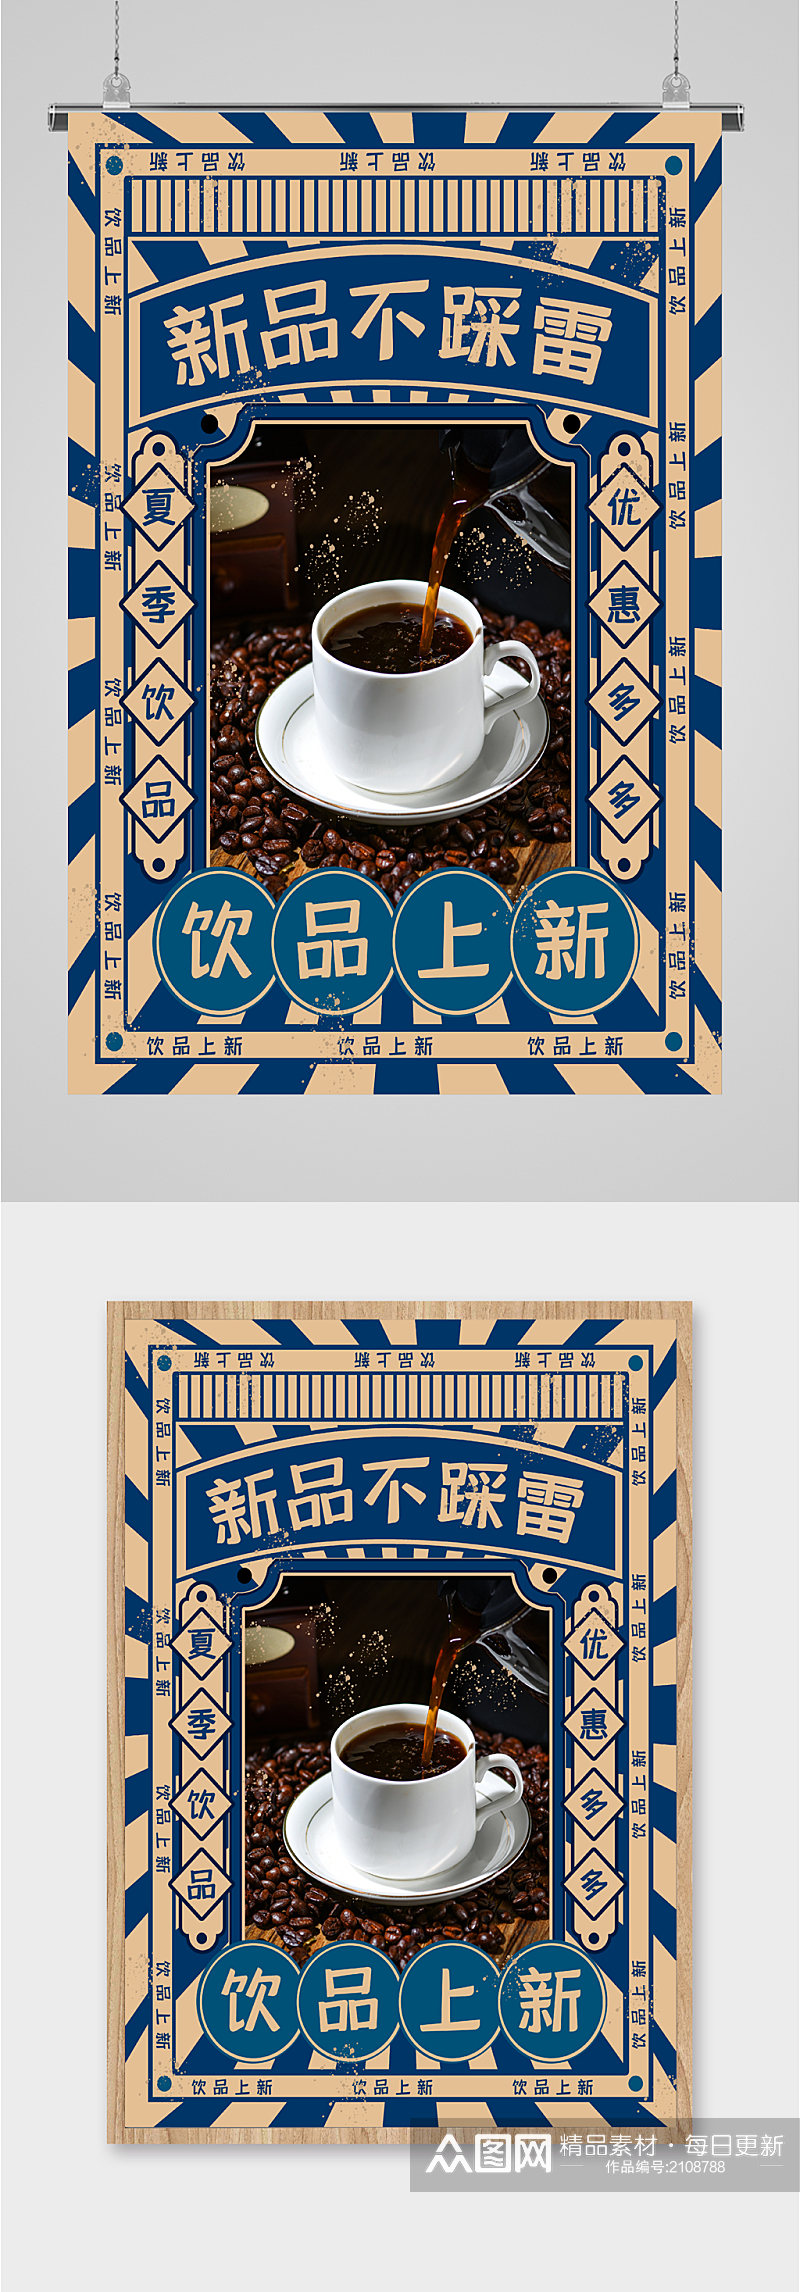 咖啡饮品新品促销海报素材